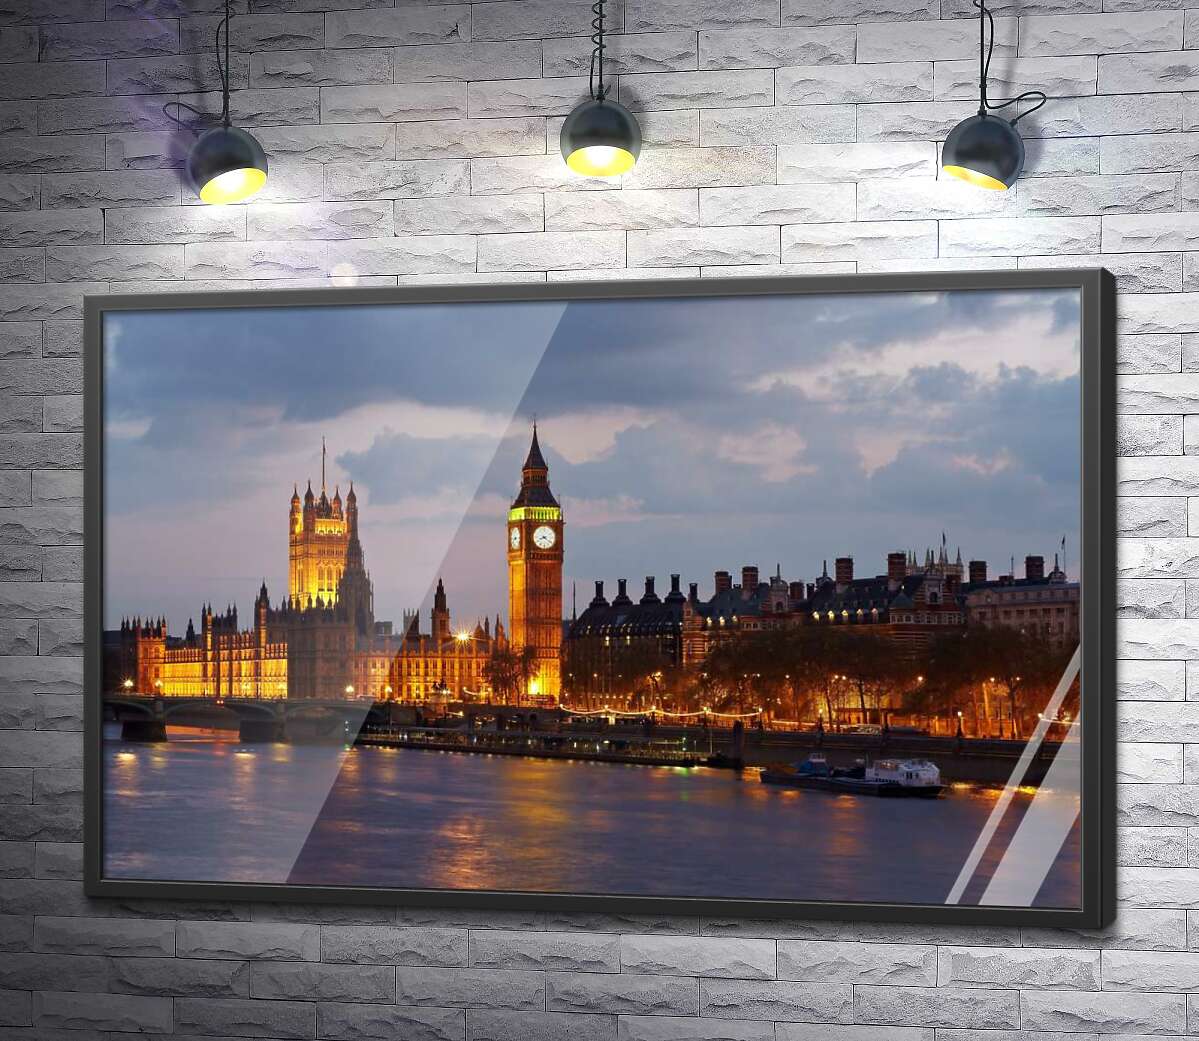 постер Вечерняя набережная Темзы сияет огнями Вестминстерского дворца (Palace of Westminster)